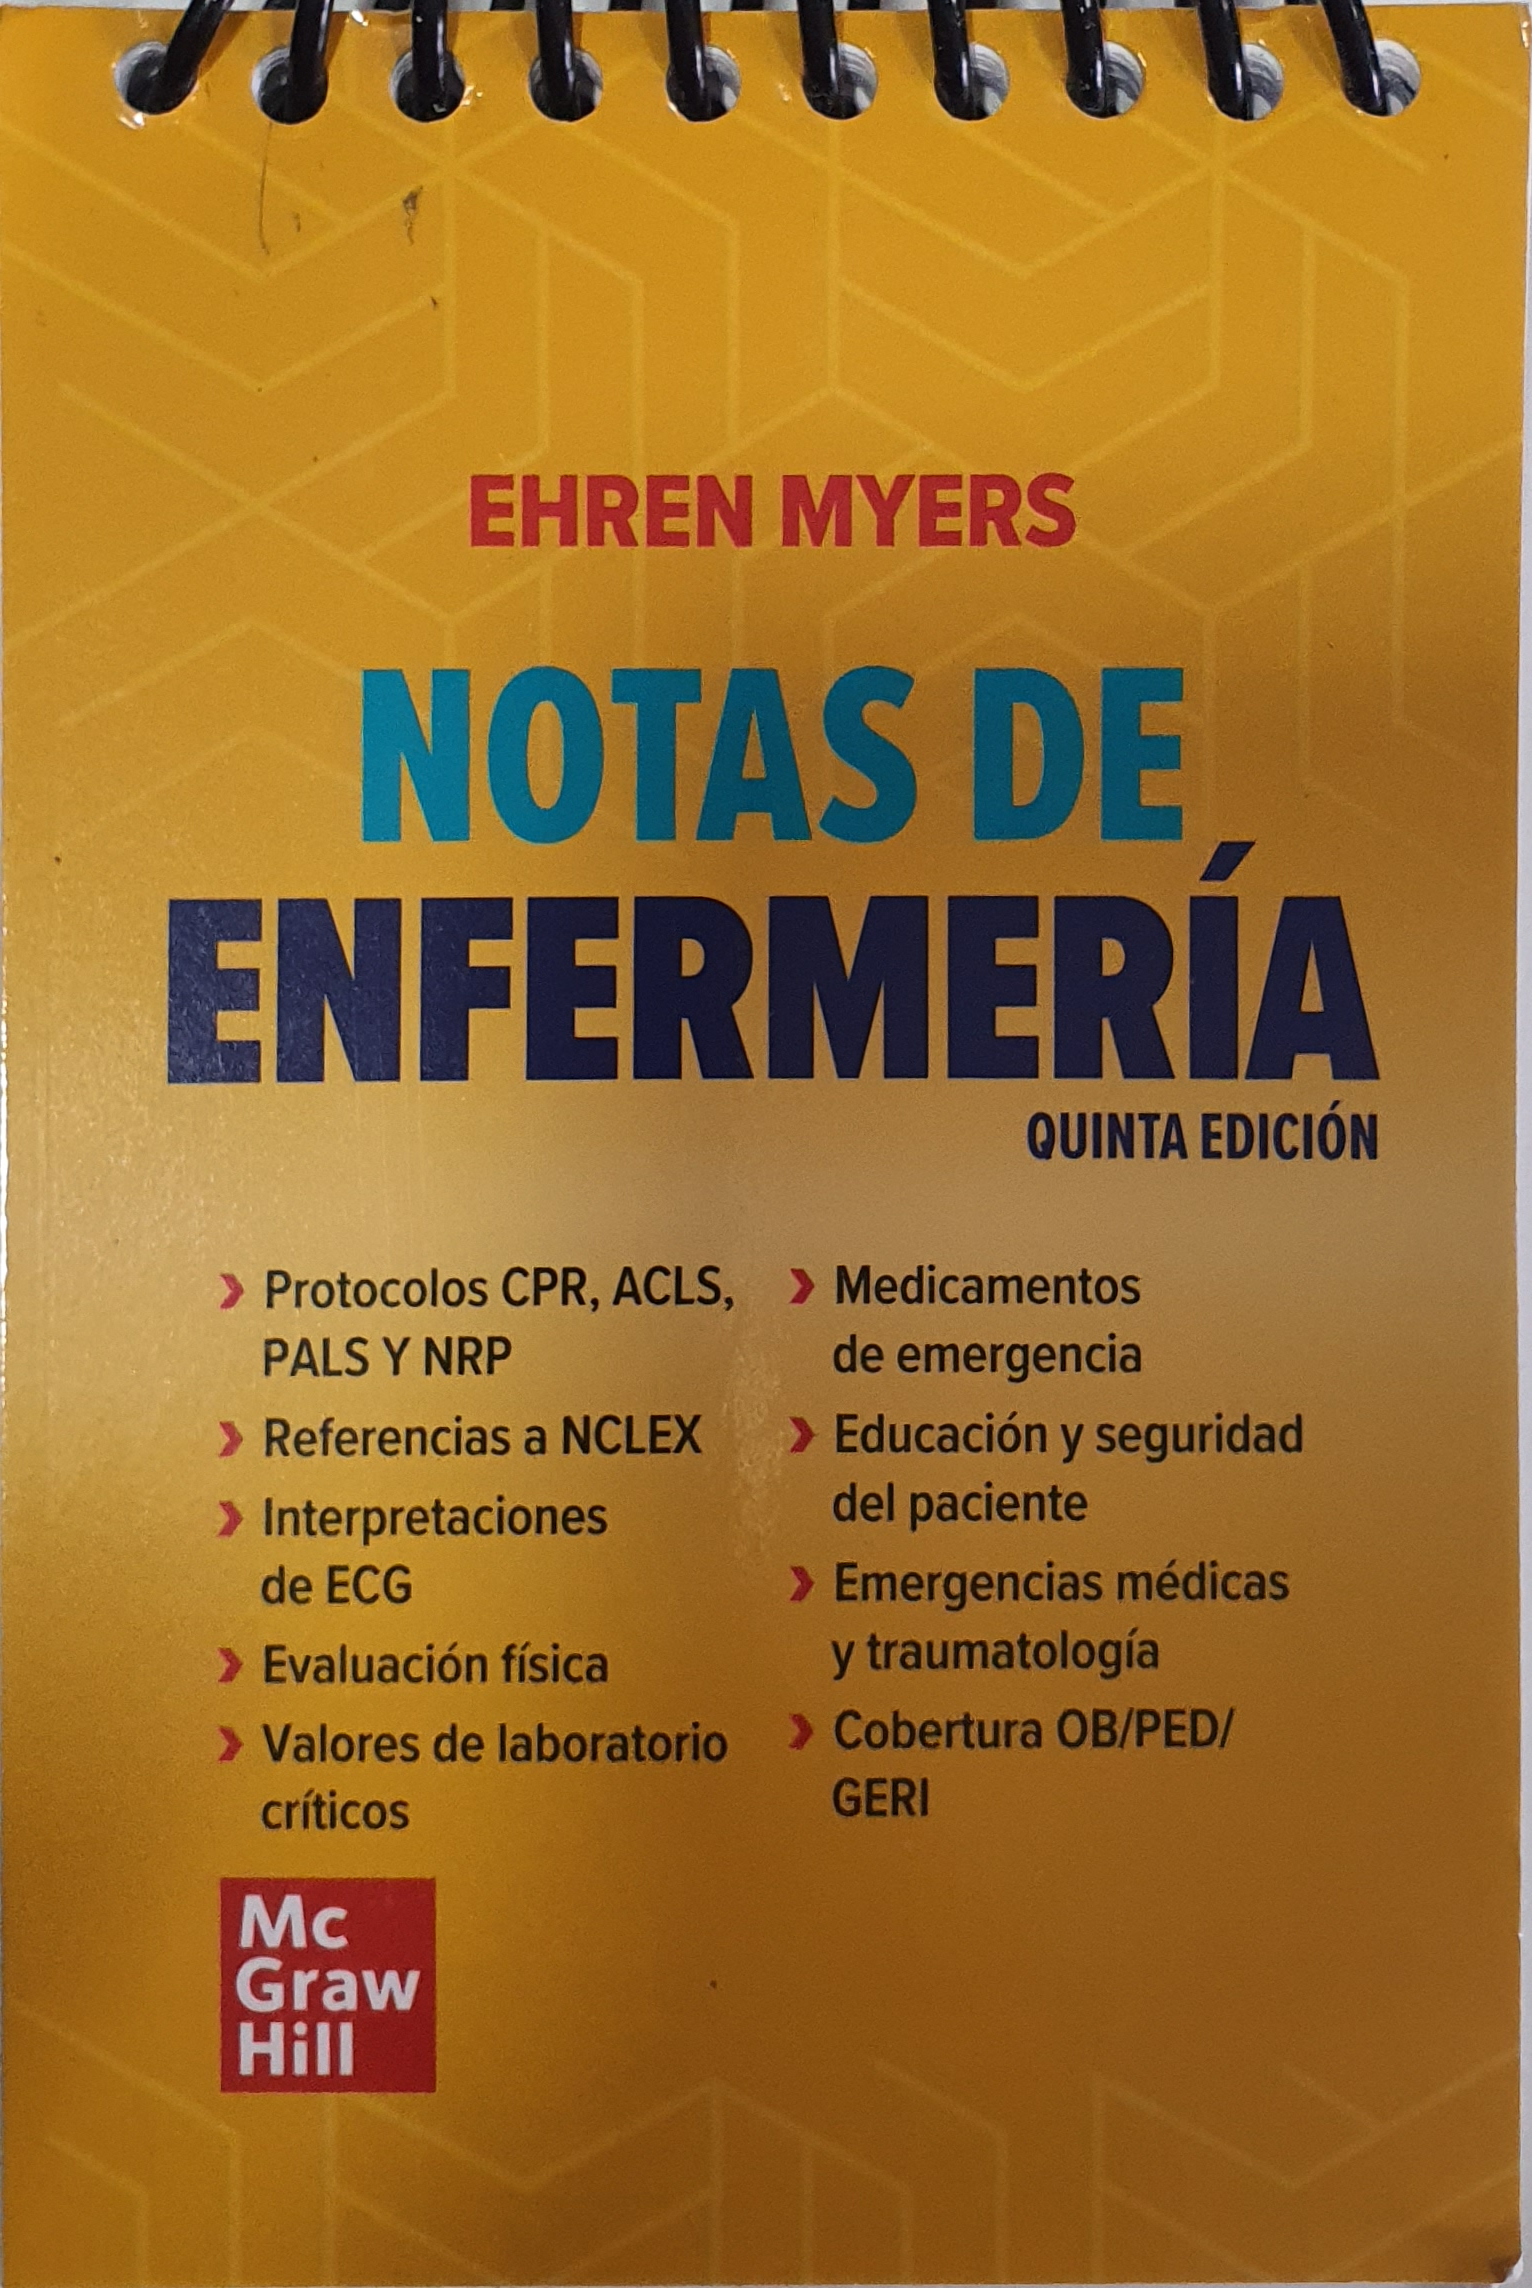 Libro Notas de Enfermería 5ta Edición